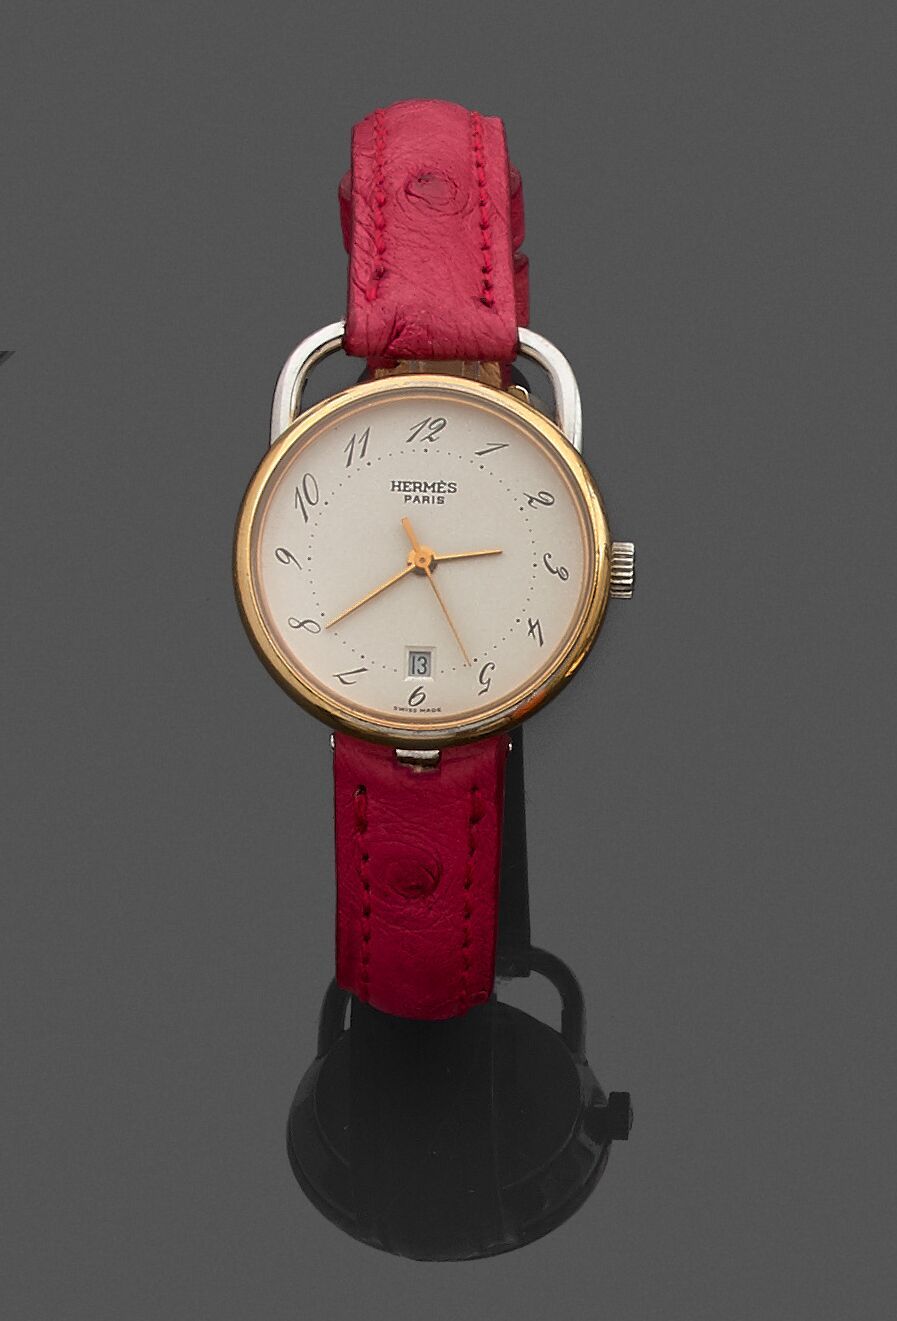 Null HERMÈS, modèle " ARCEAU "

Montre bracelet de dame, la montre de forme rond&hellip;